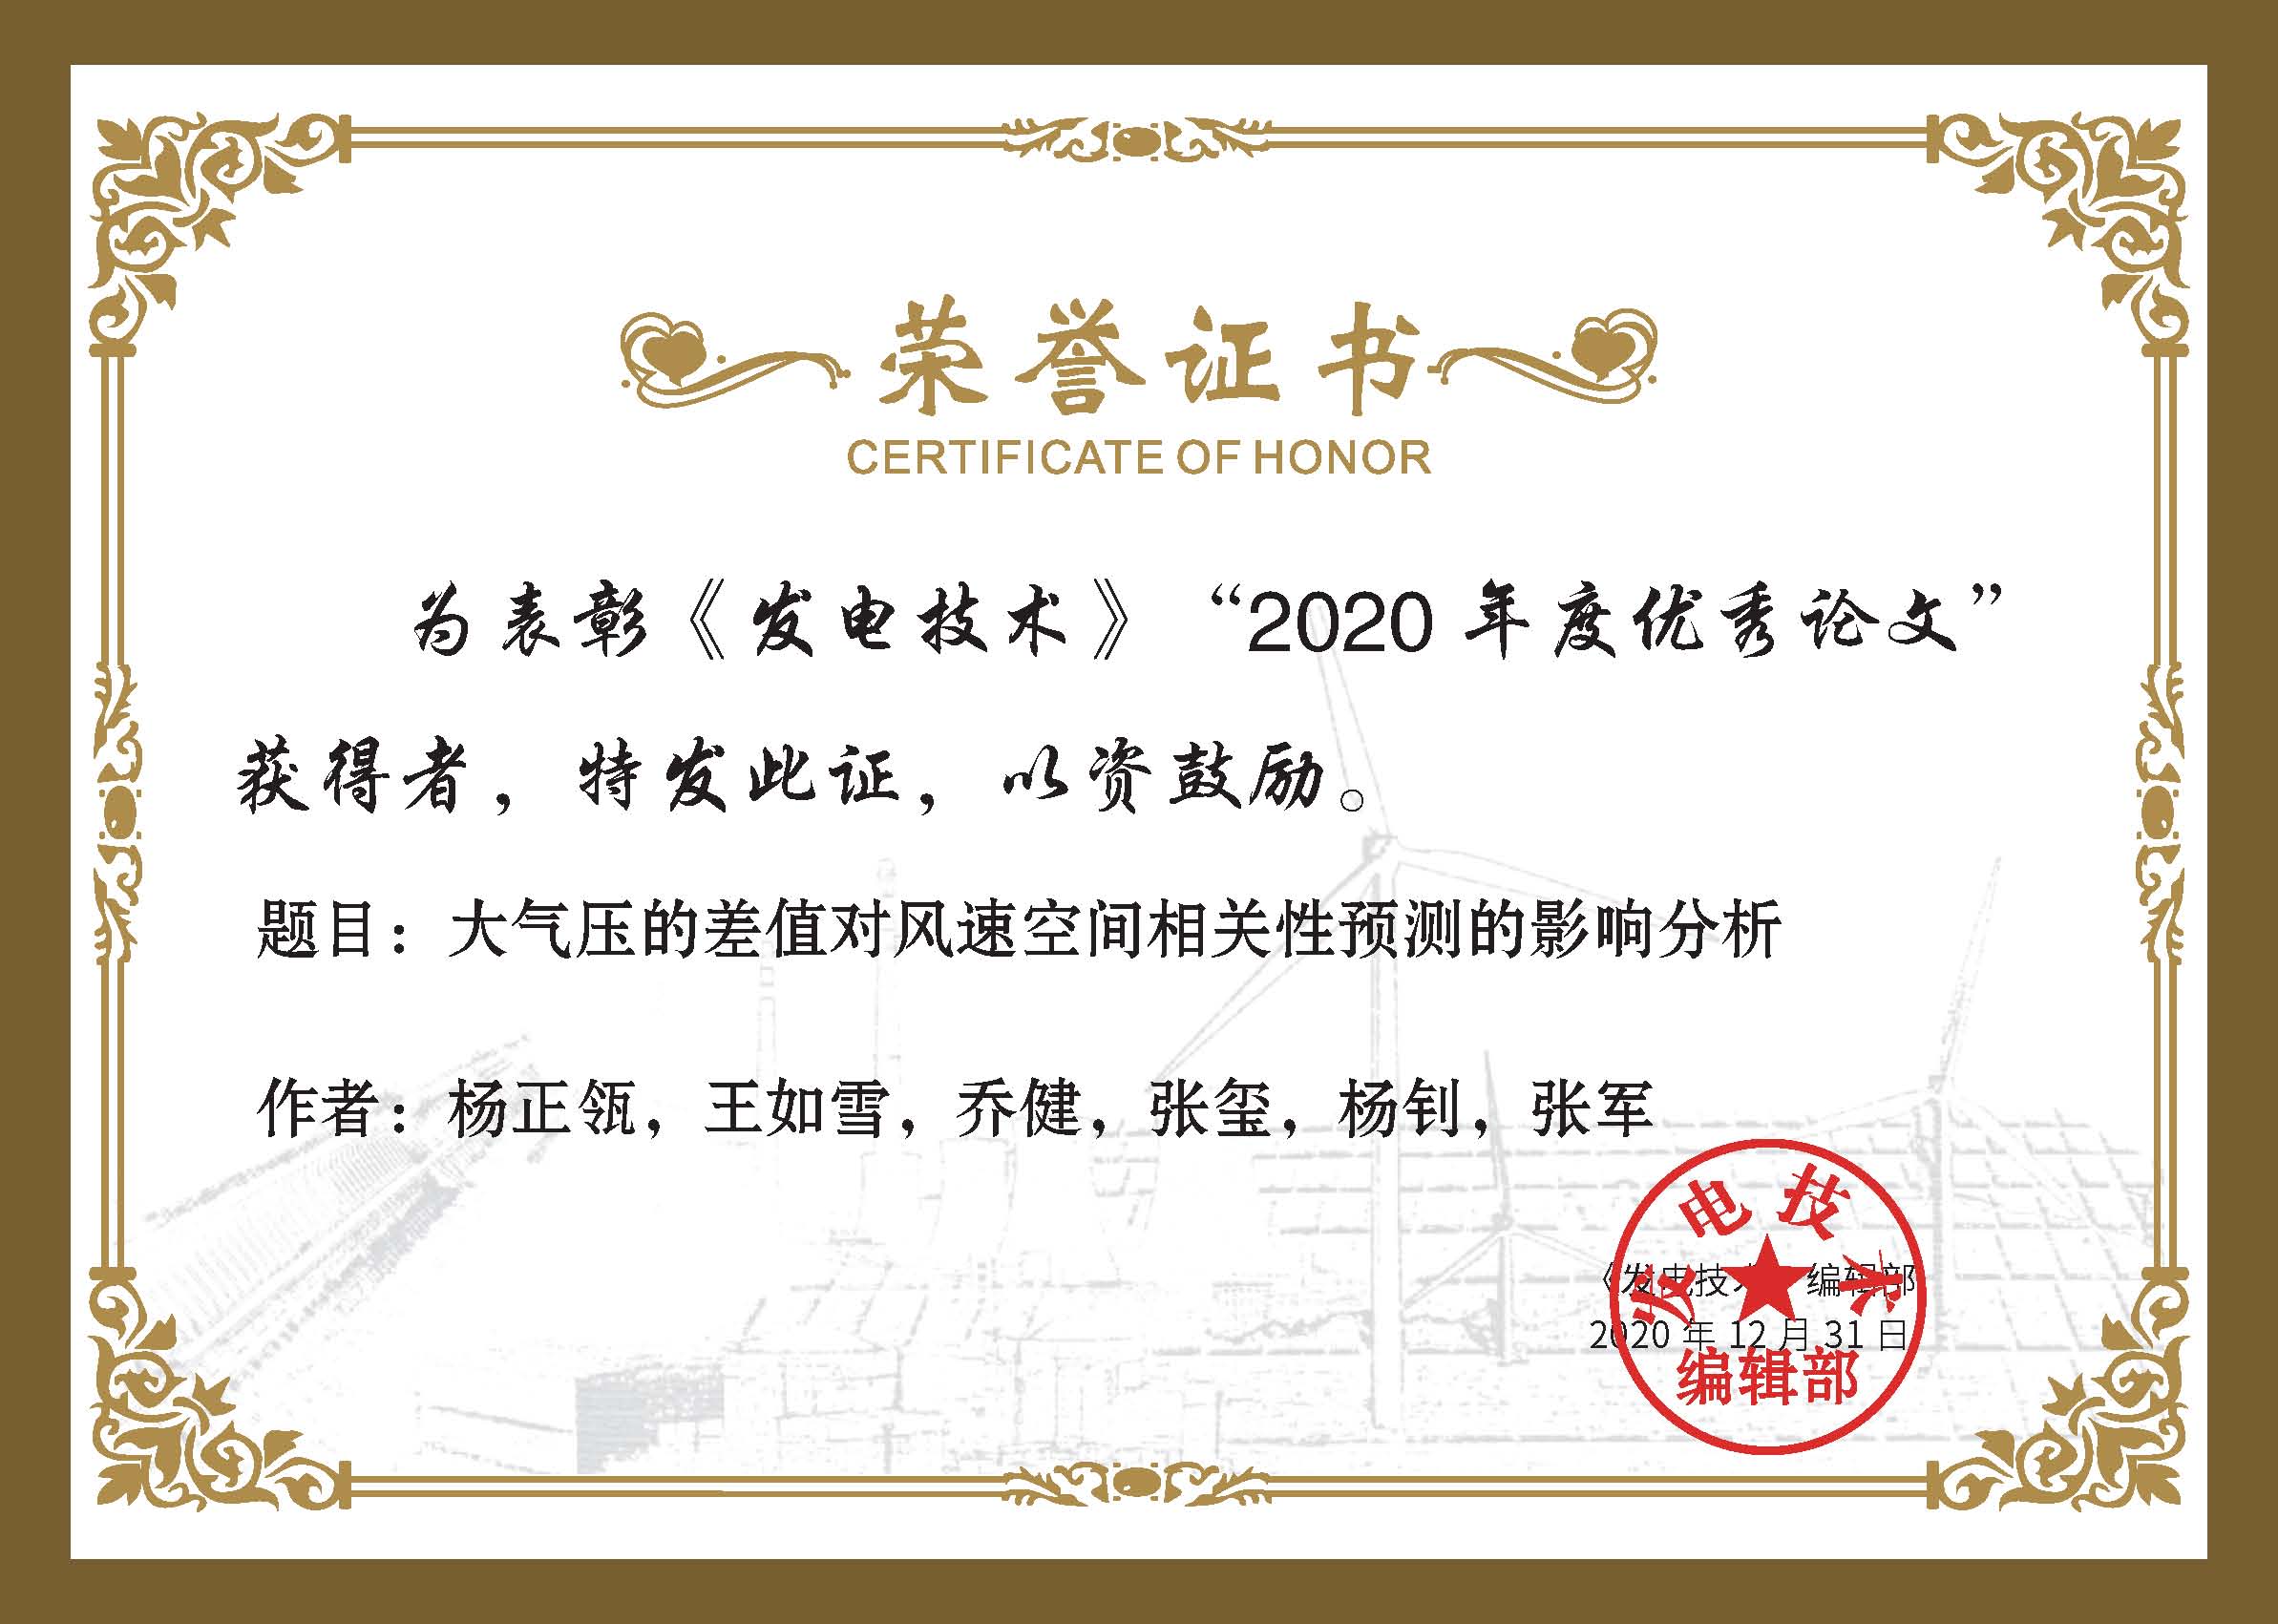 杨正瓴 2020年度《发电技术》优秀论文证书.jpg